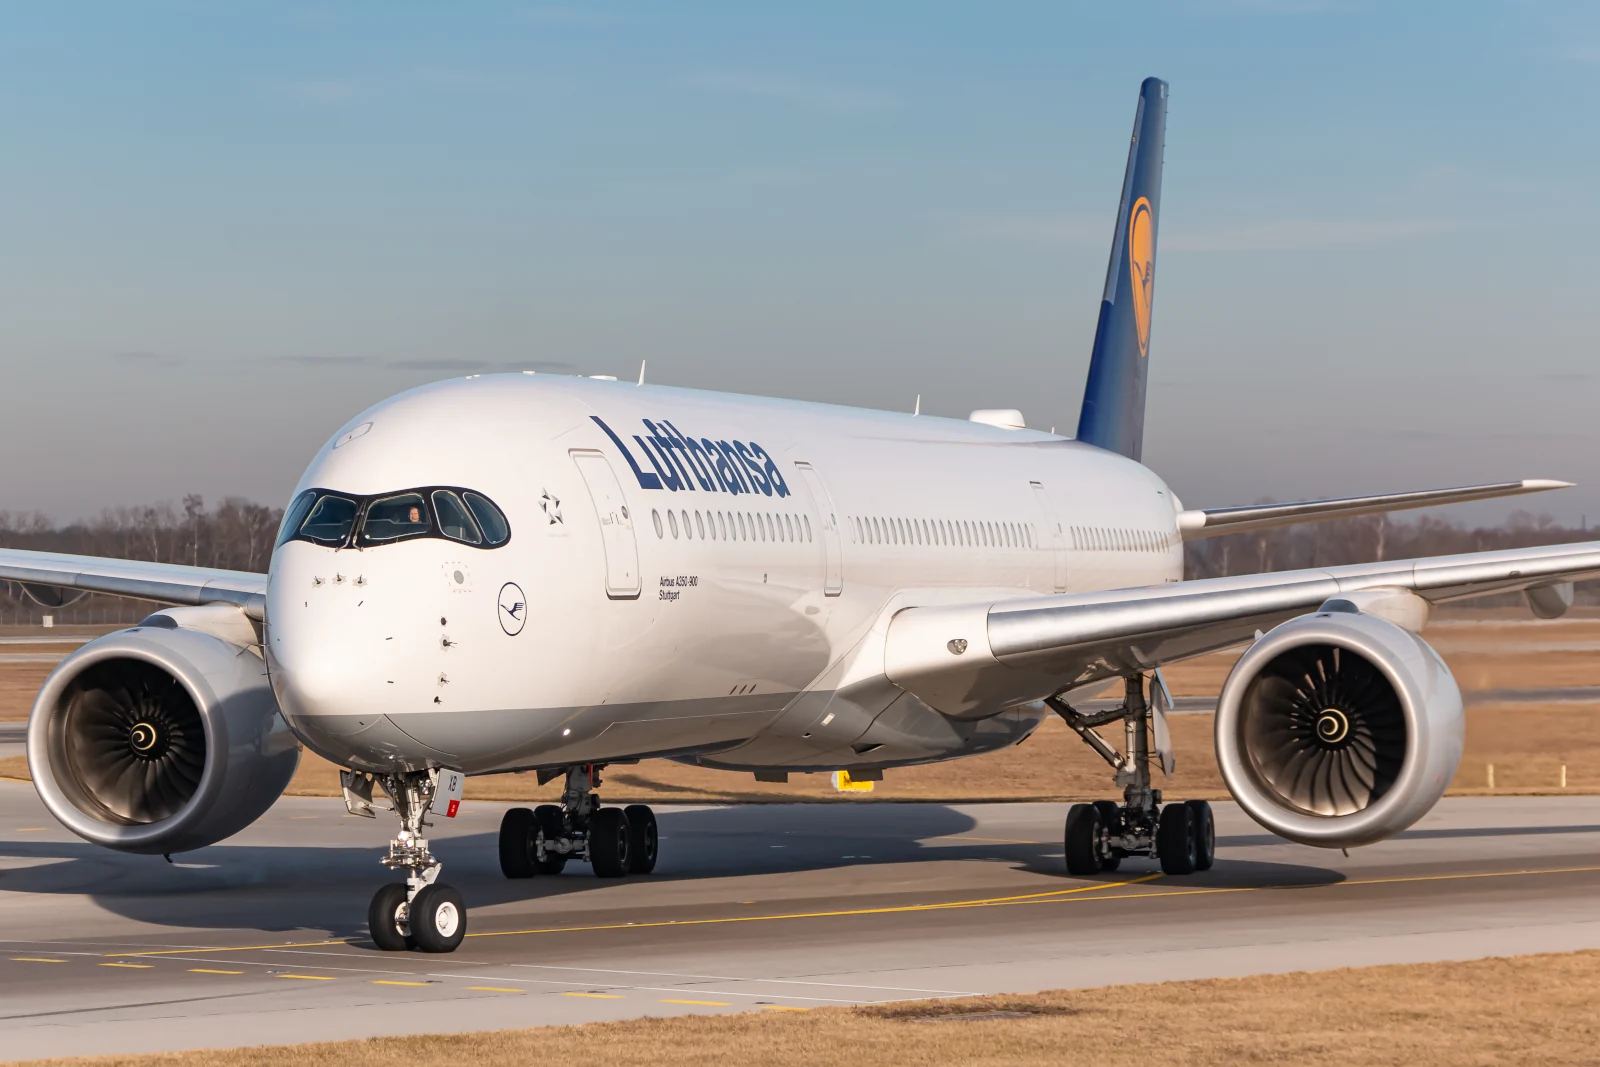 Lufthansa Airbus A350 Flugzeug am Flughafen München (MUC) in Deutschland. Airbus ist ein Flugzeughersteller aus Toulouse, Frankreich.